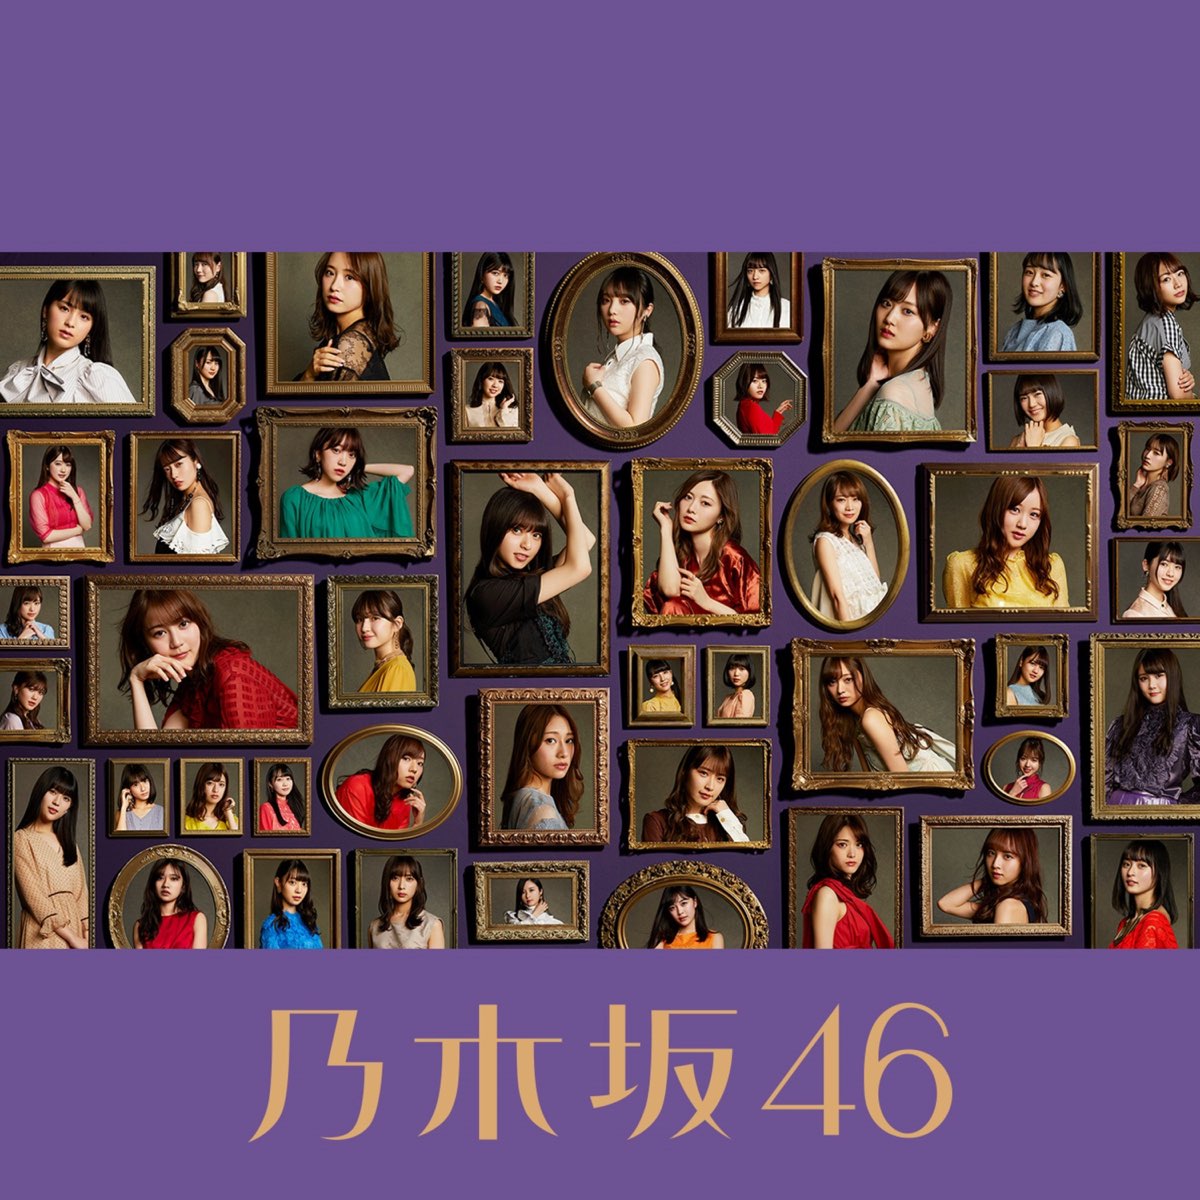 今が思い出になるまで (Complete Edition) - 乃木坂46のアルバム 